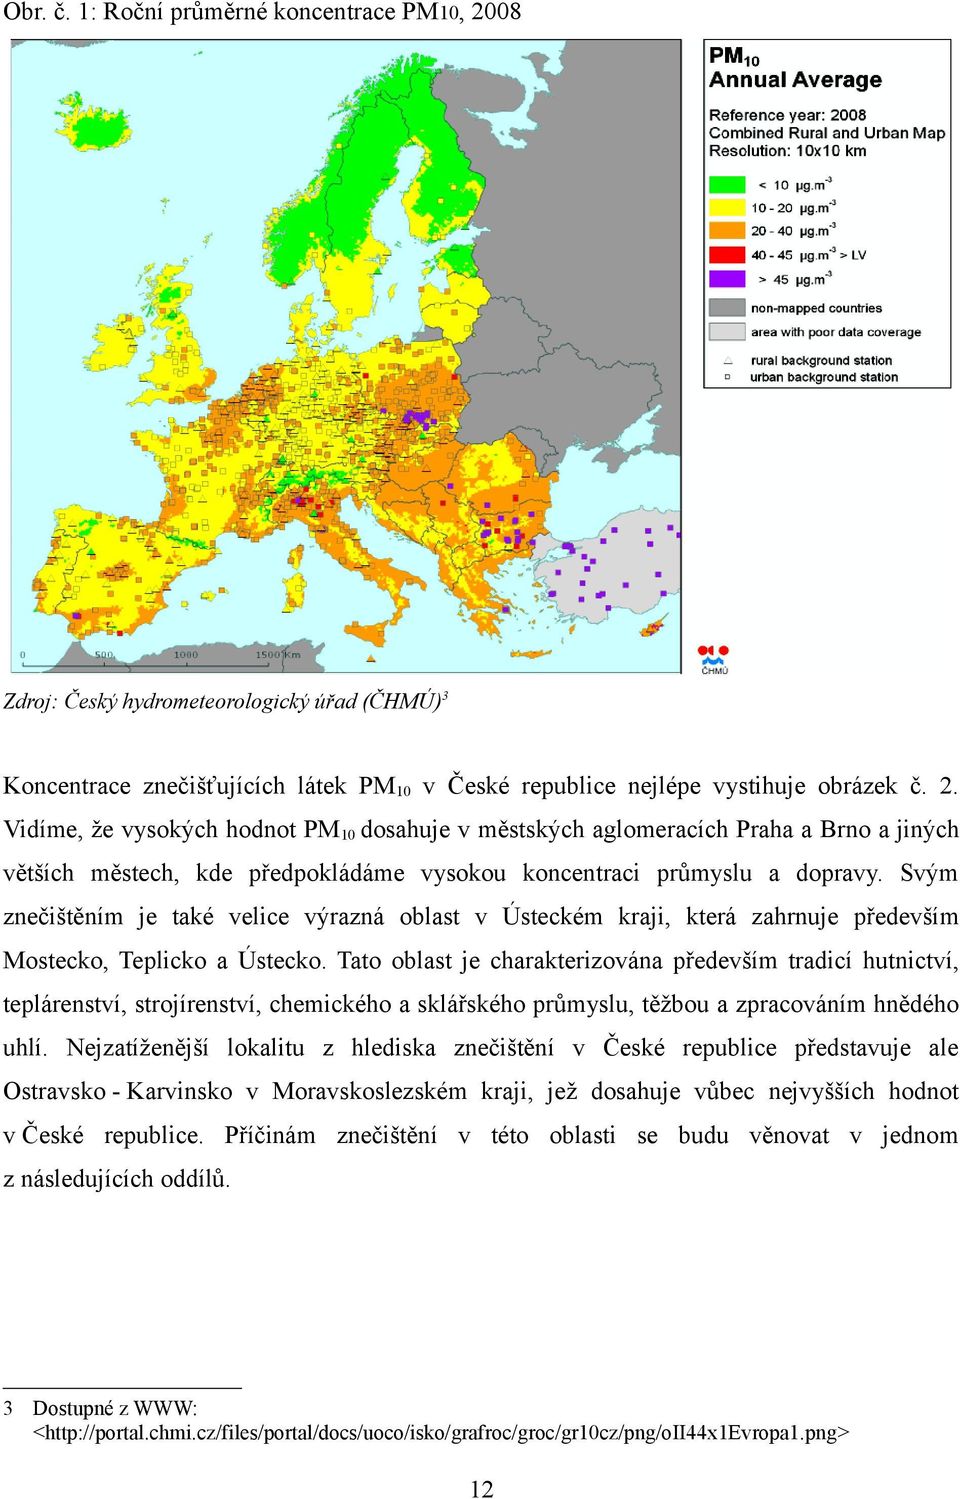 Vidíme, že vysokých hodnot PM10 dosahuje v městských aglomeracích Praha a Brno a jiných větších městech, kde předpokládáme vysokou koncentraci průmyslu a dopravy.